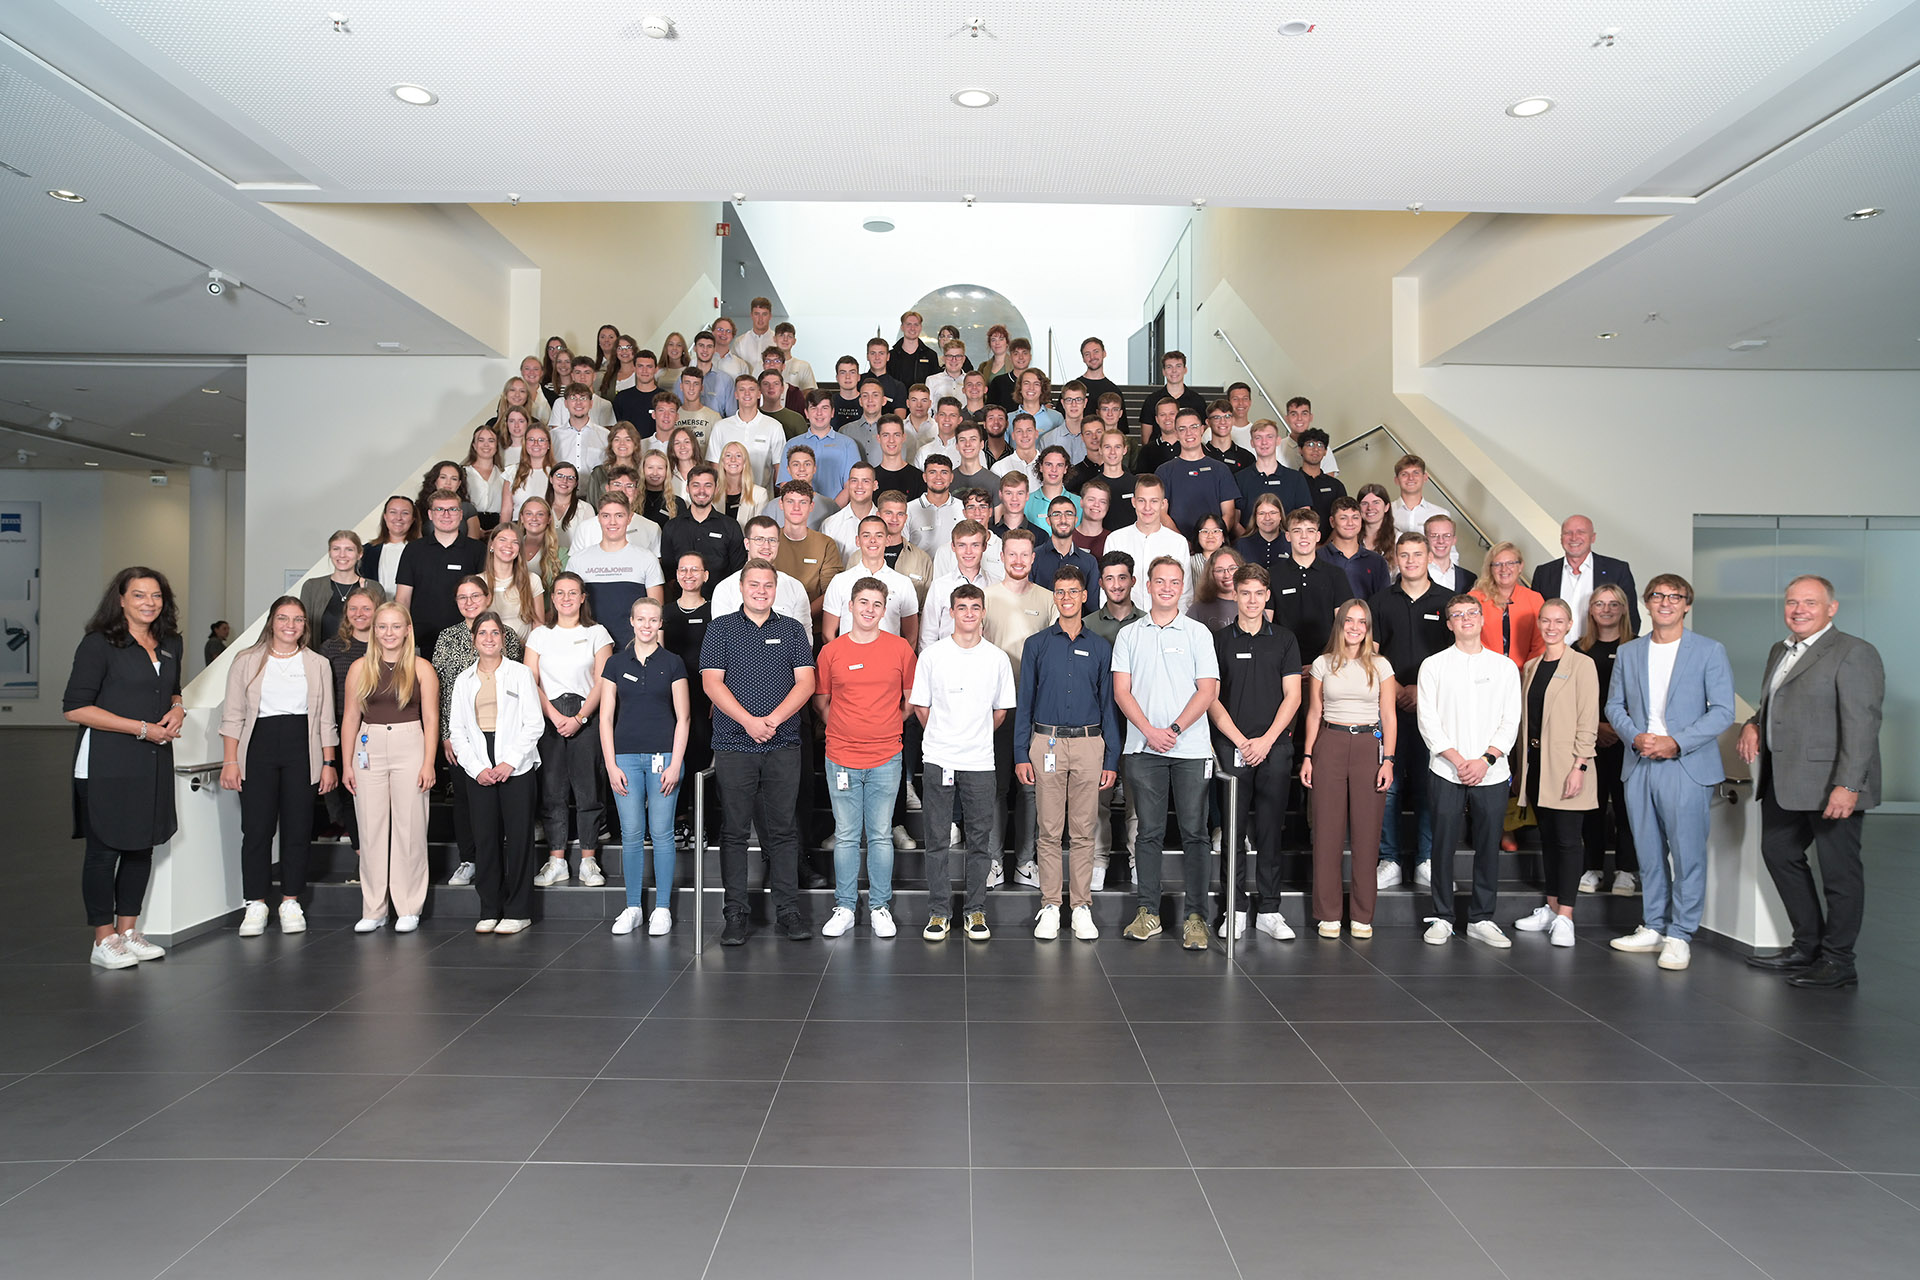 ZEISS bildet 107 Dual Studierenden zusammen mit seiner Partnerhochschule, der Dualen Hochschule Baden-Württemberg (DHBW) in Heidenheim, Mosbach, Stuttgart und Karlsruhe aus.